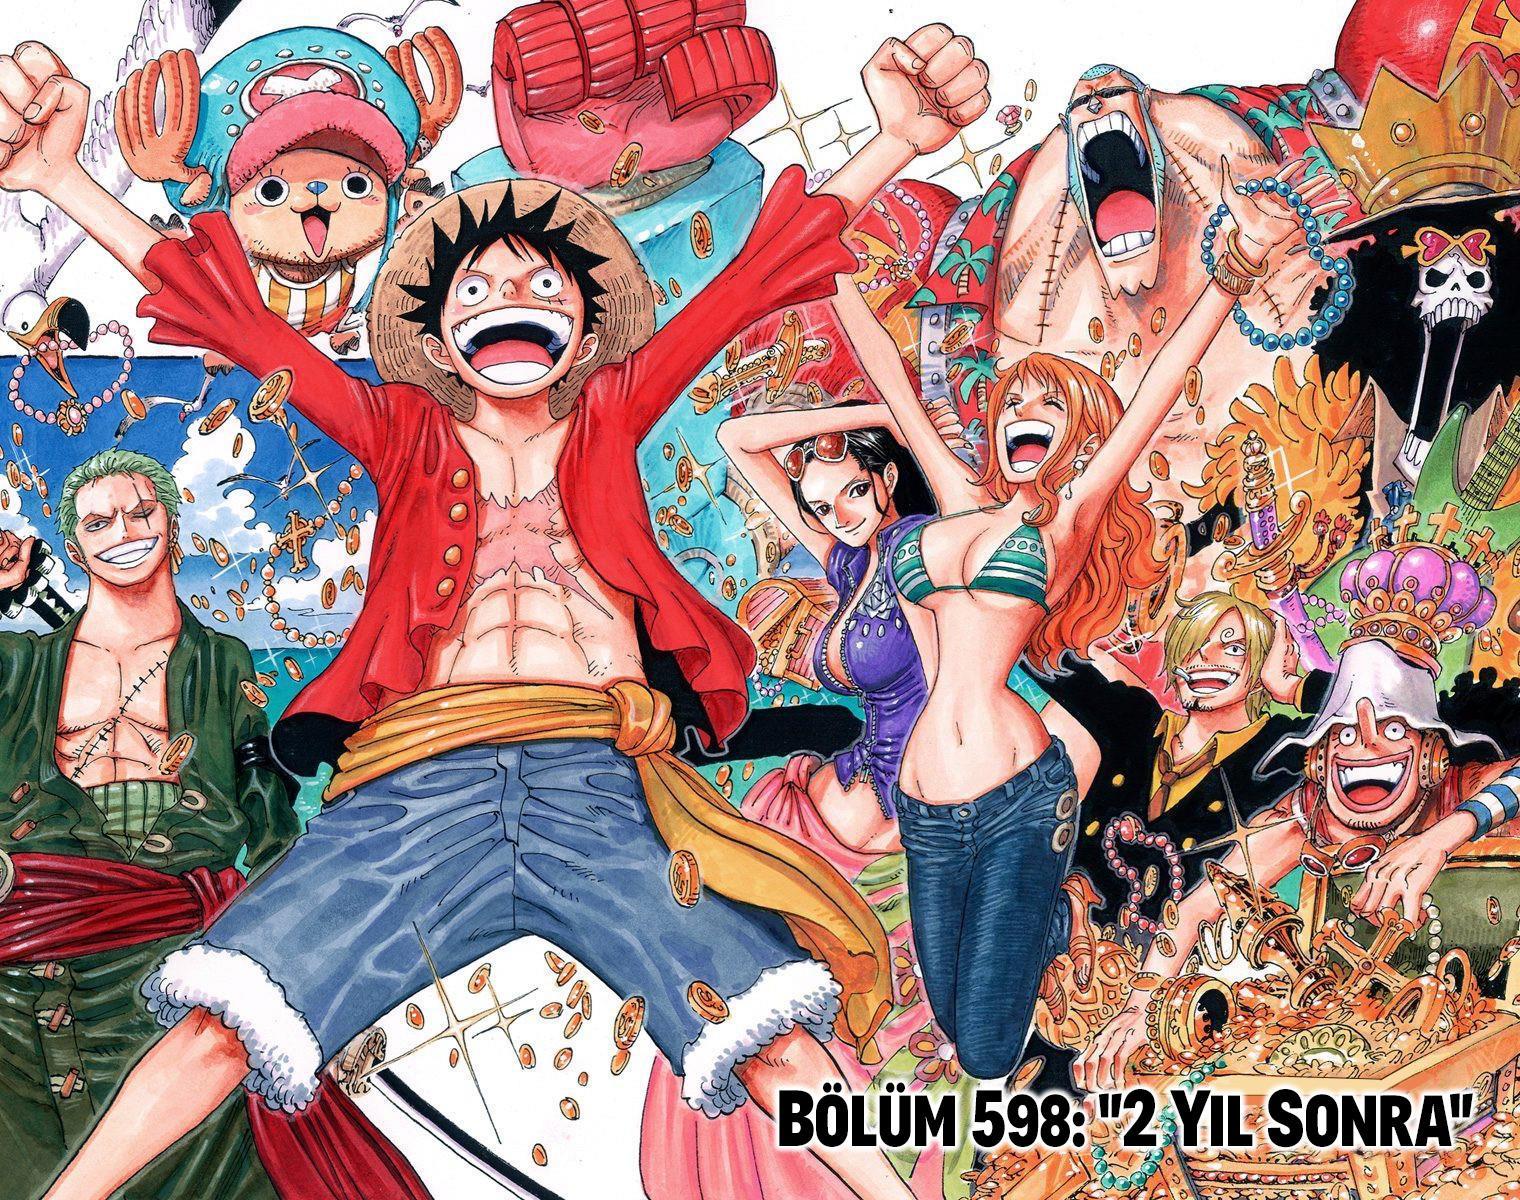 One Piece [Renkli] mangasının 0598 bölümünün 2. sayfasını okuyorsunuz.